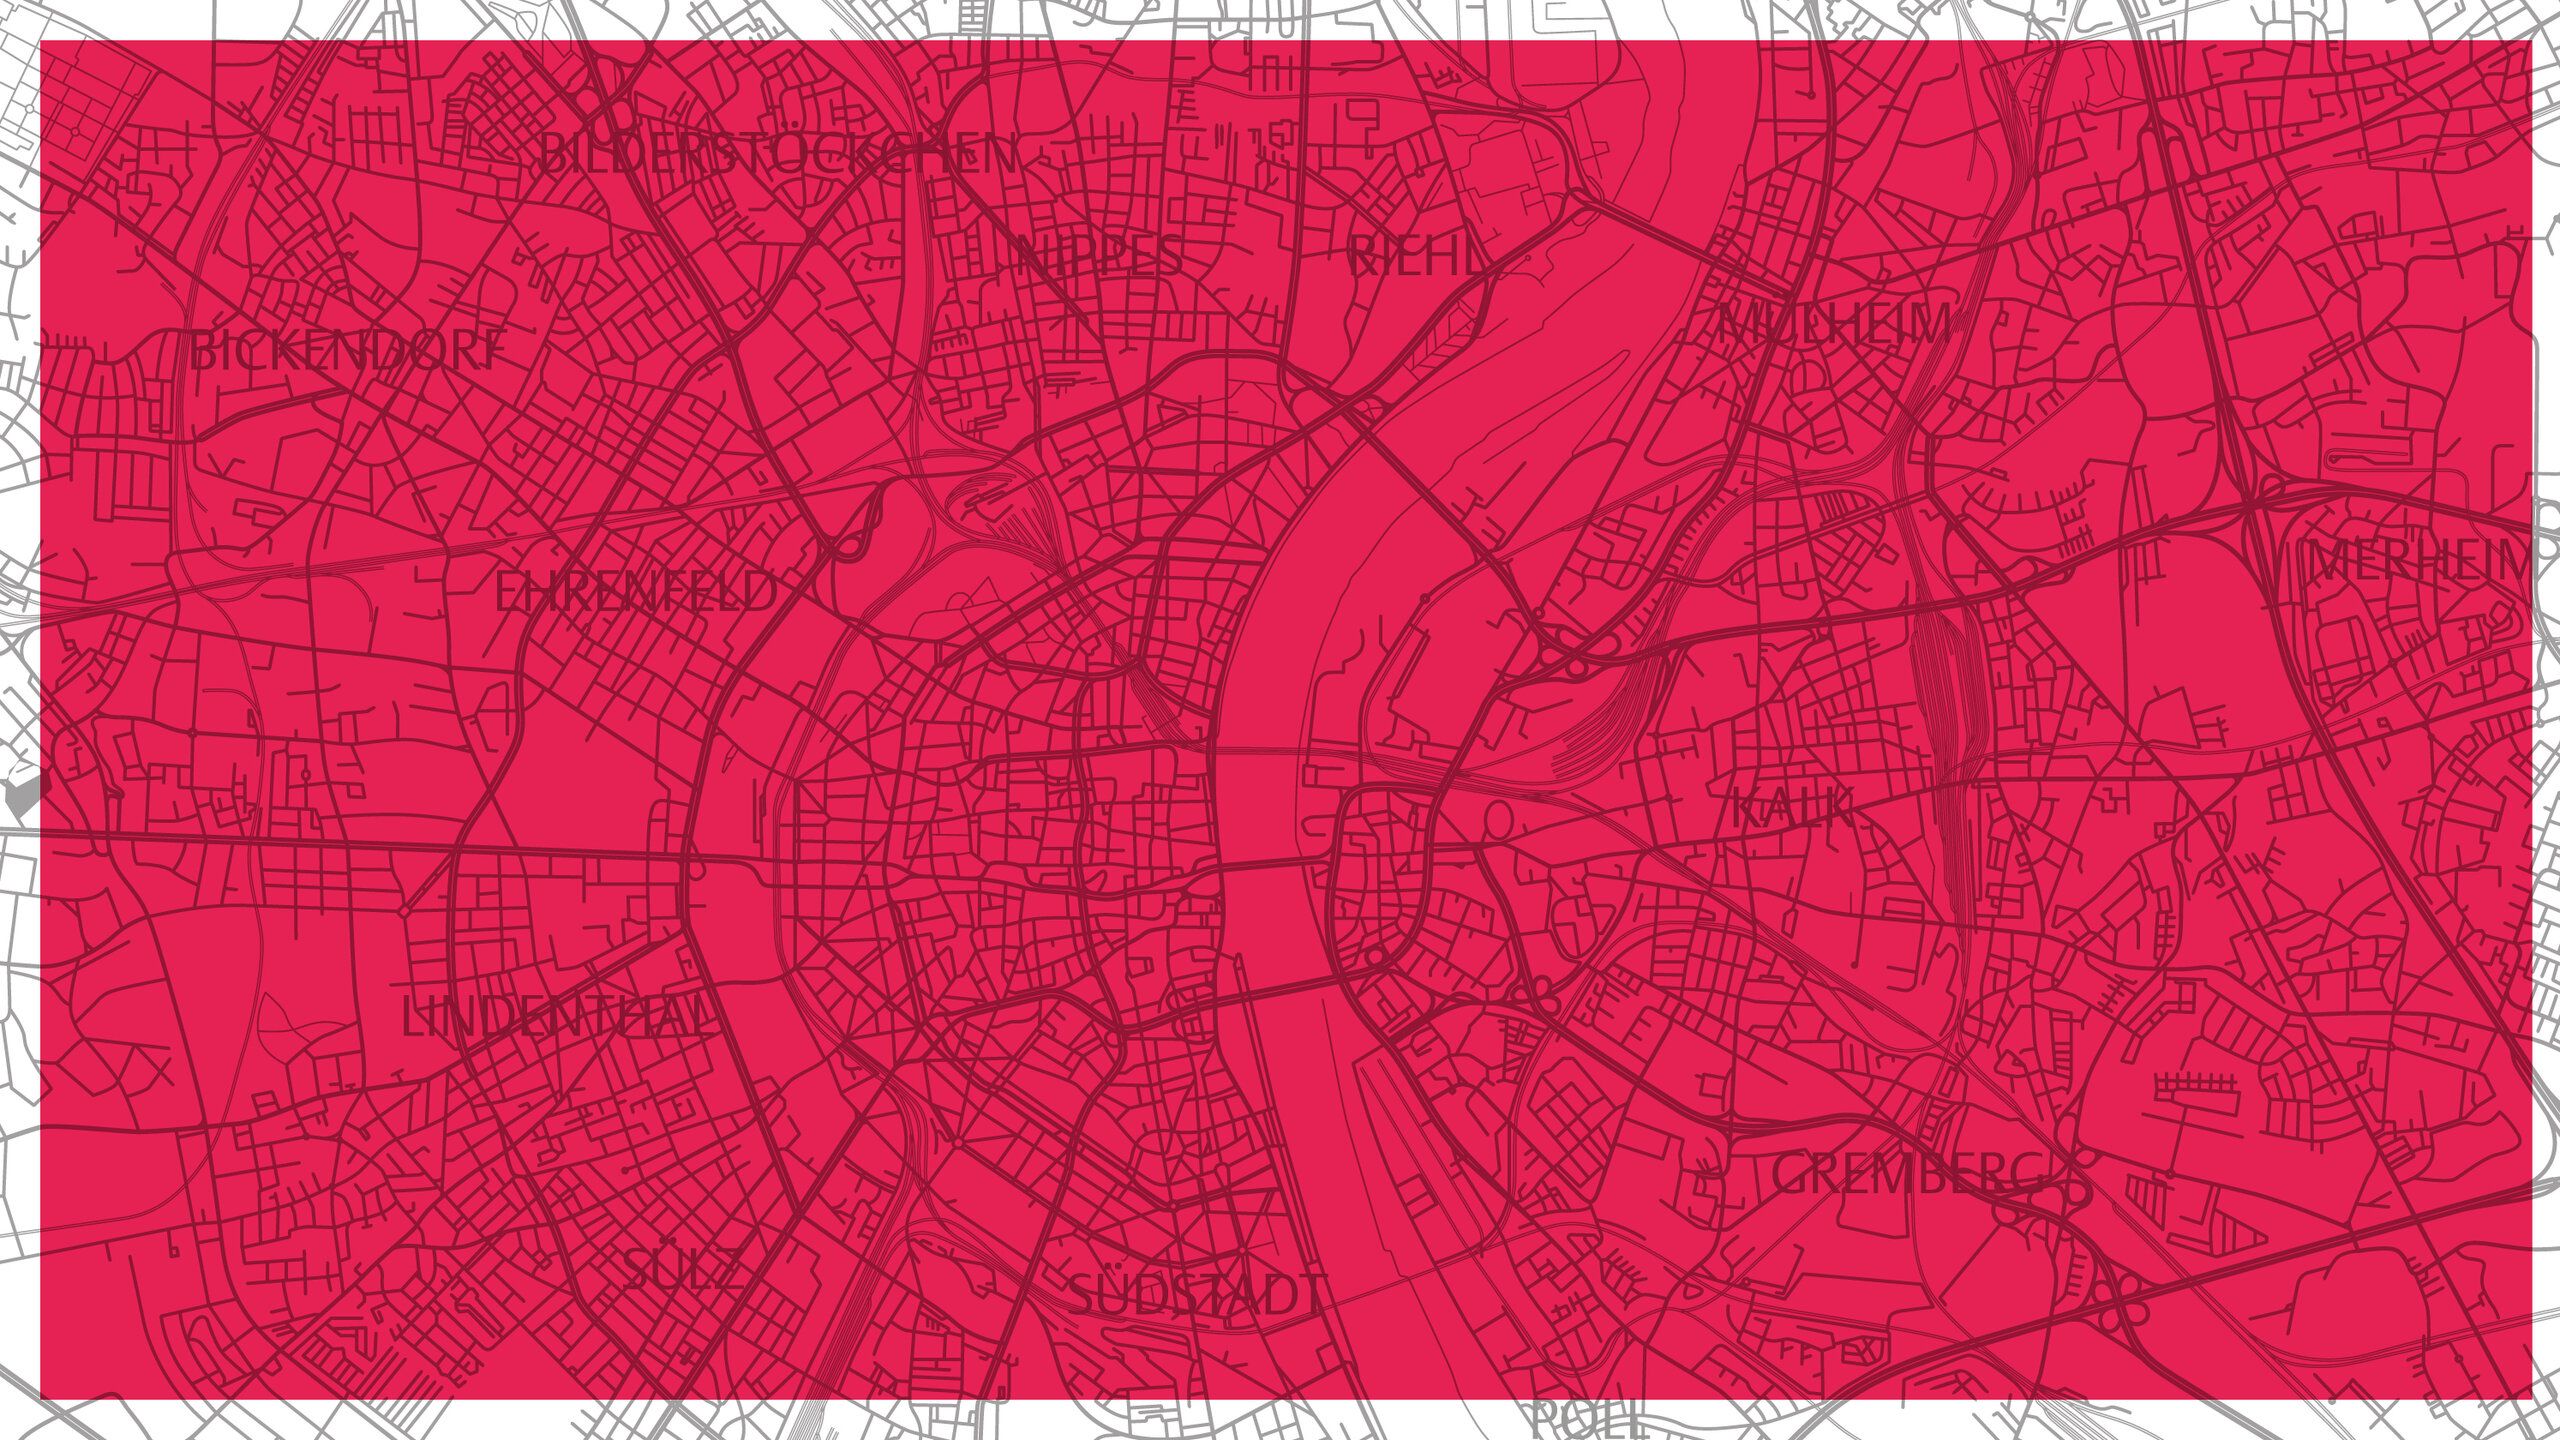 Die Karte der Stadt Köln vor rotem Hintergrund.